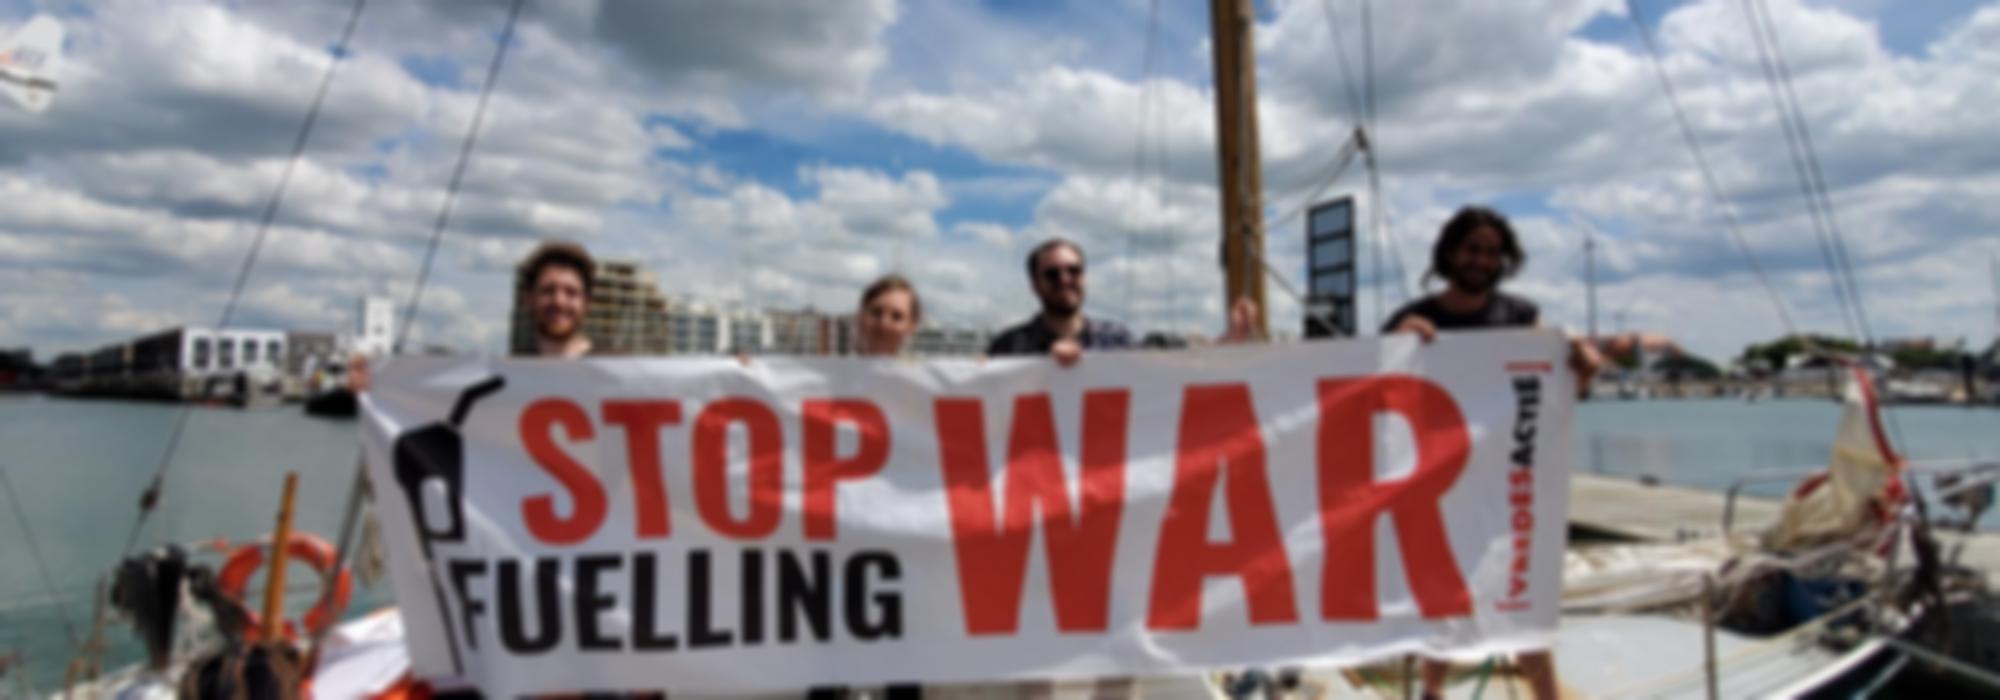 Vier mensen staan op een boot en houden een banner vast, waarop staat 'stop fuelling war'